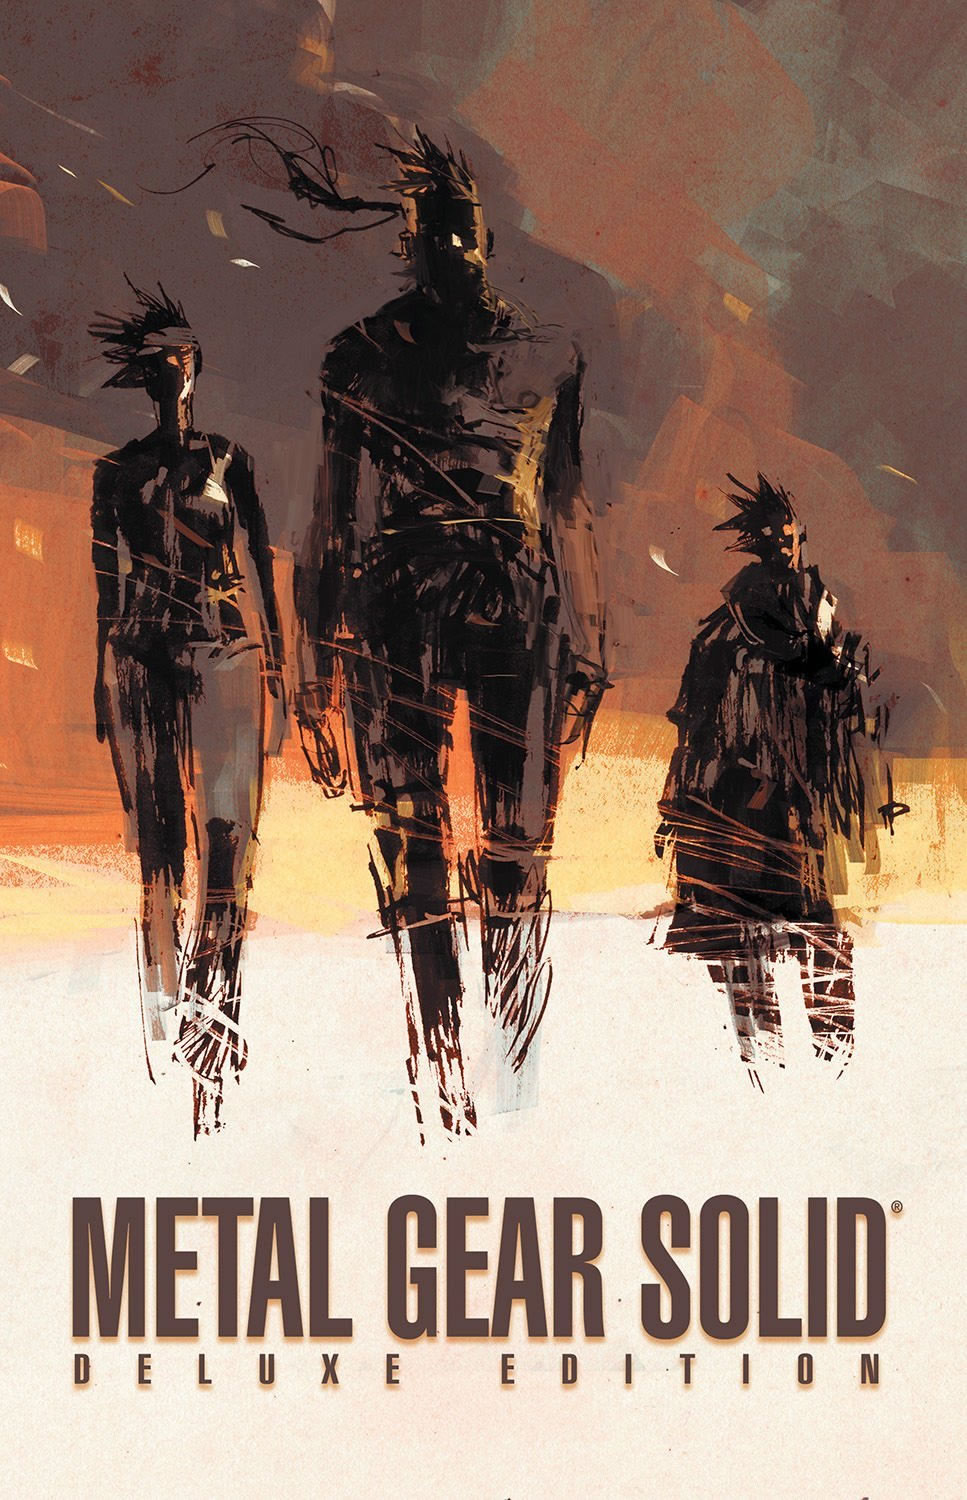 Ashley Wood - Deux ditions deluxes pour la BD de Metal Gear Solid